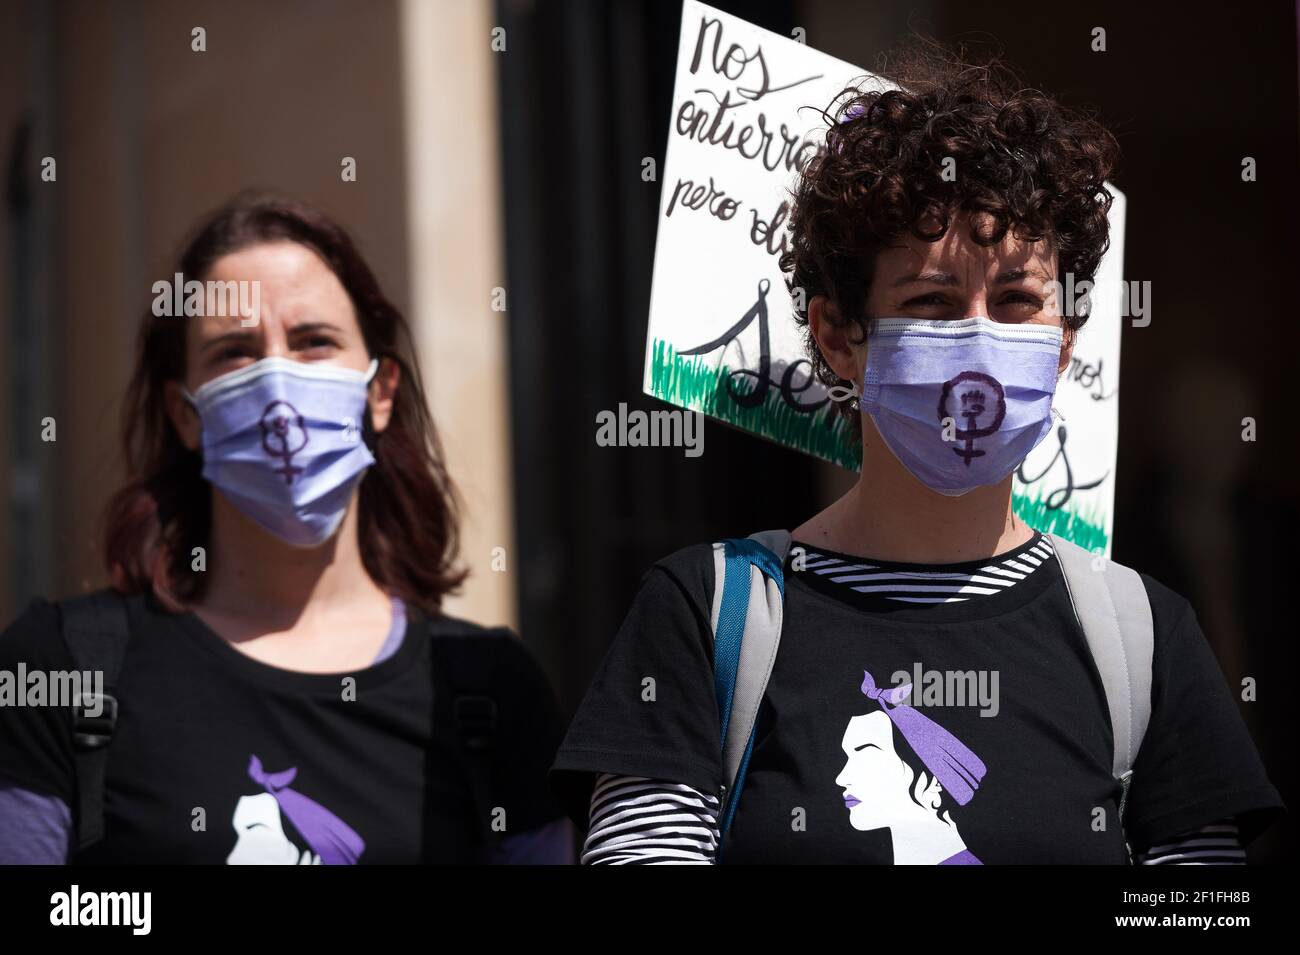 Las principales organizaciones de mujeres organizaron varias protestas e  iniciativas en España para conmemorar el día Internacional de la Mujer, con  máscaras faciales y símbolos feministas vistos durante una protesta  feminista por